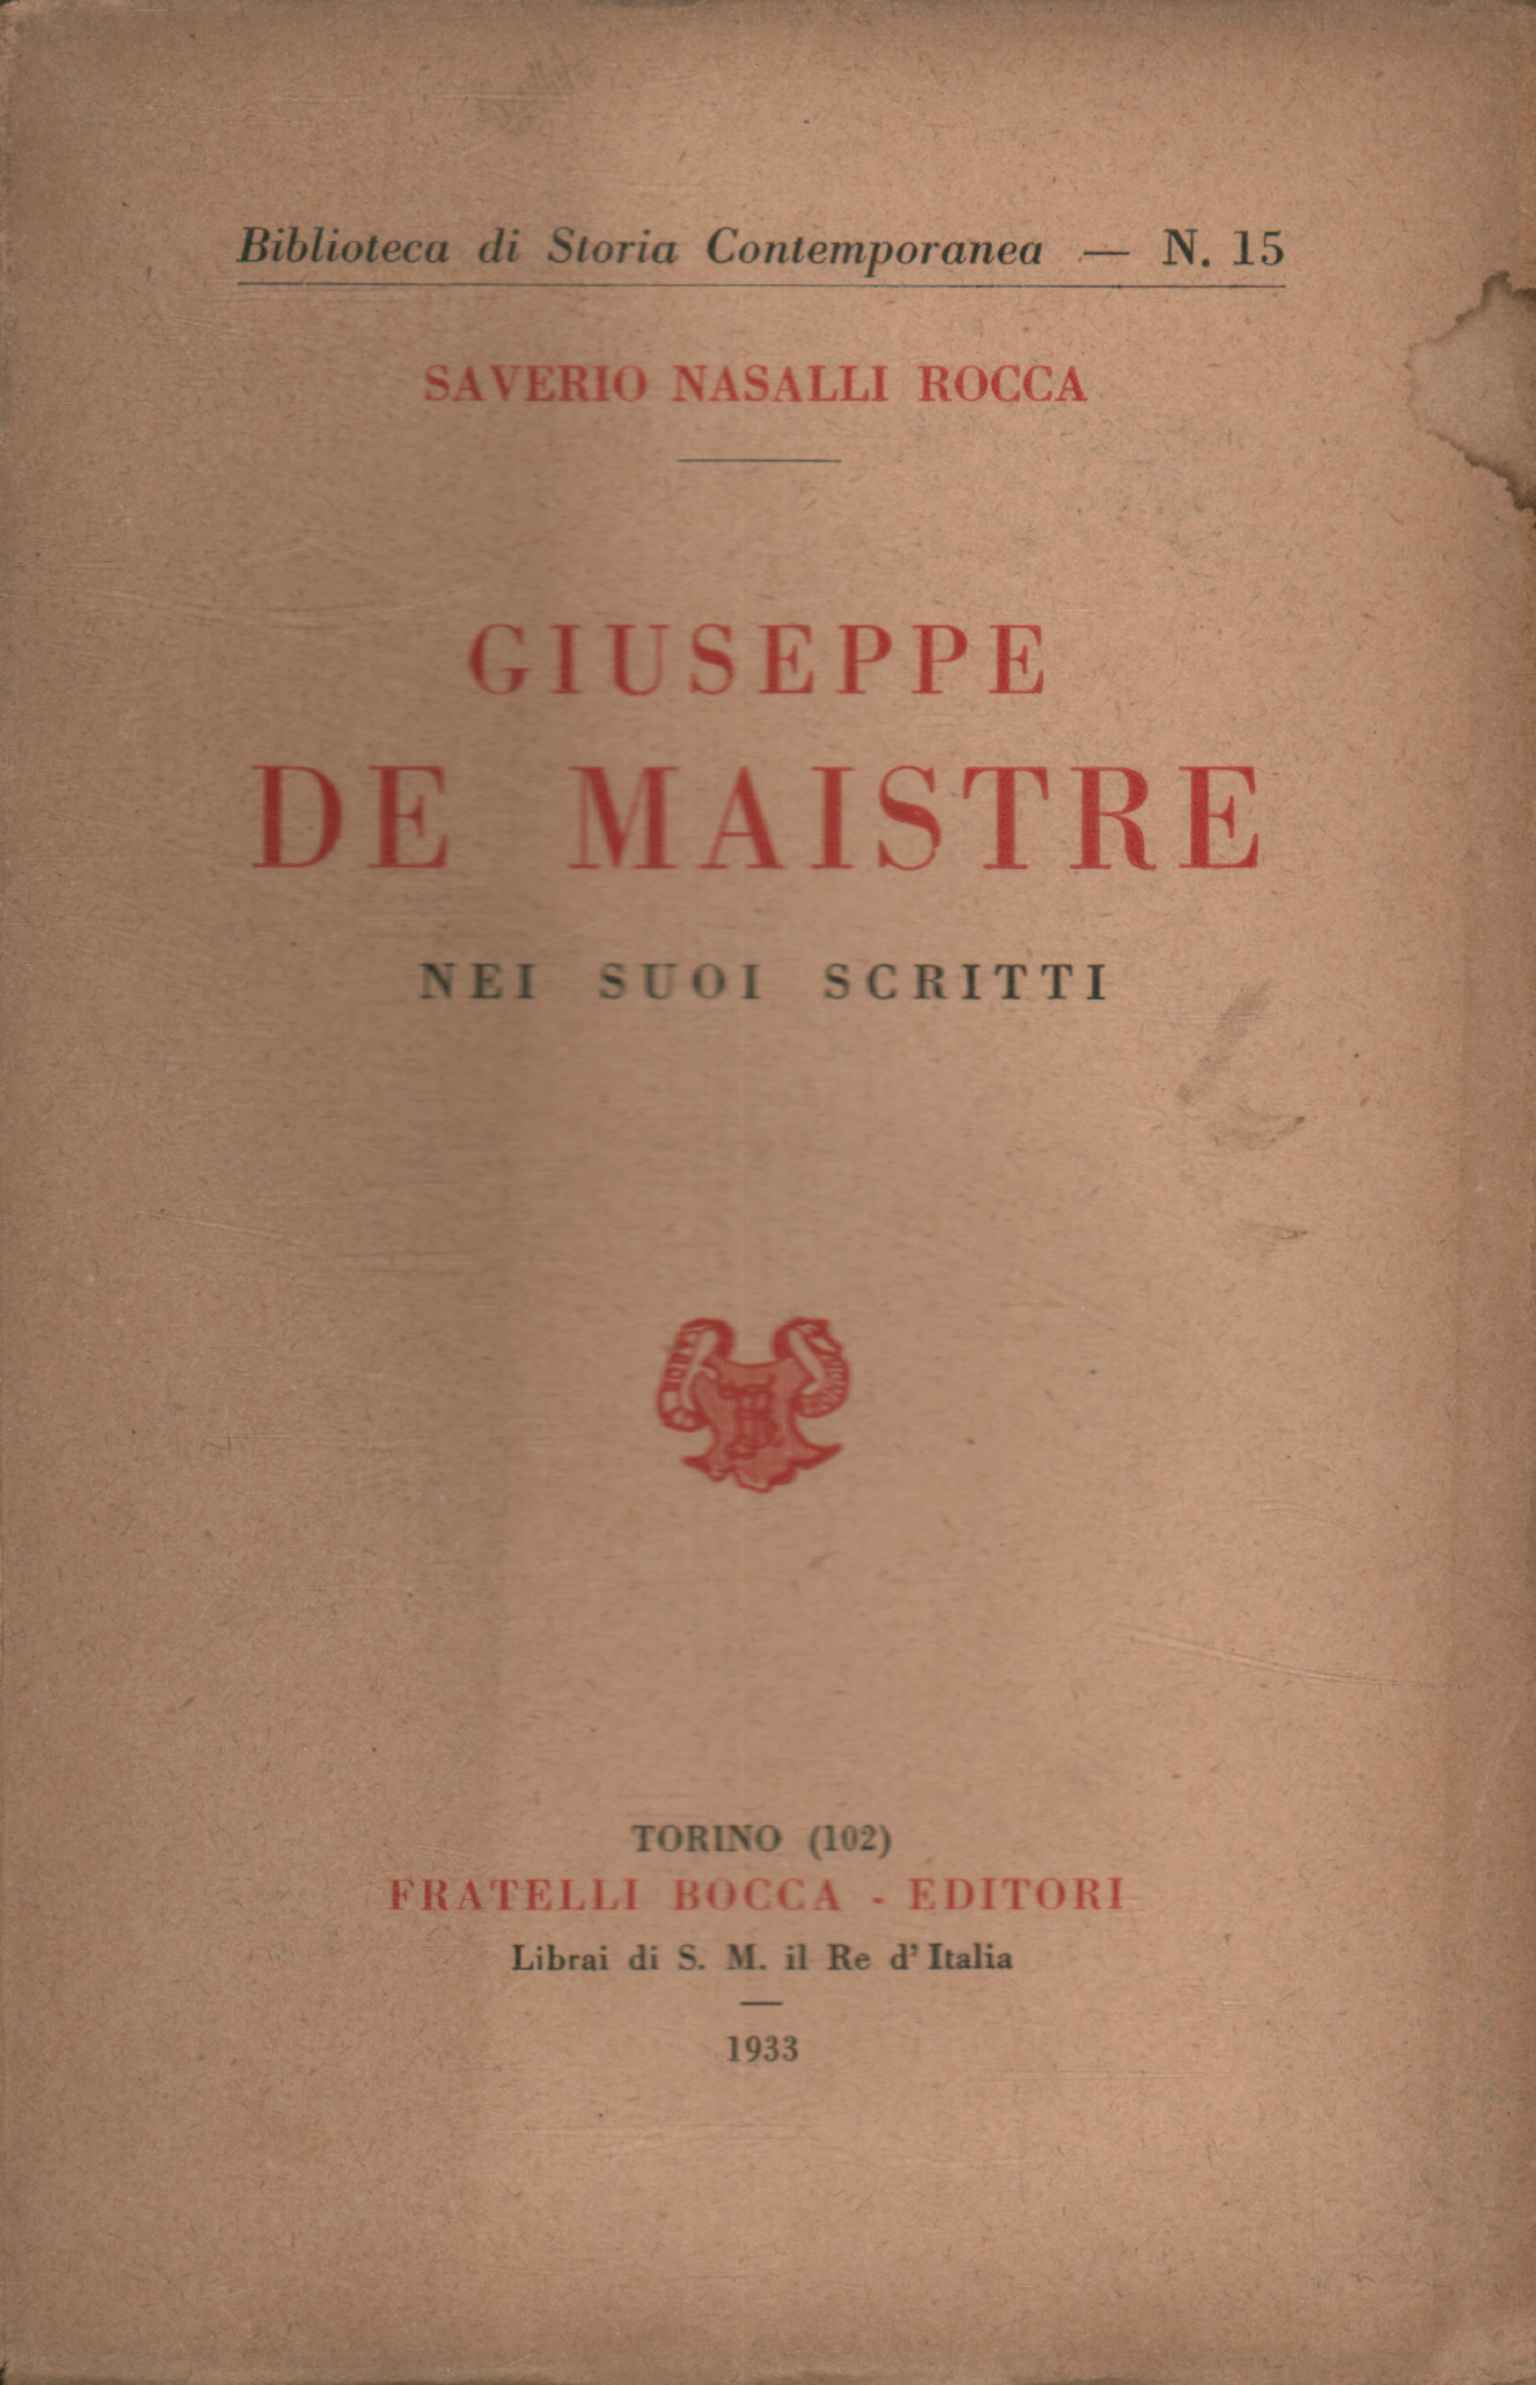 Giuseppe De Maistre en sus escritos